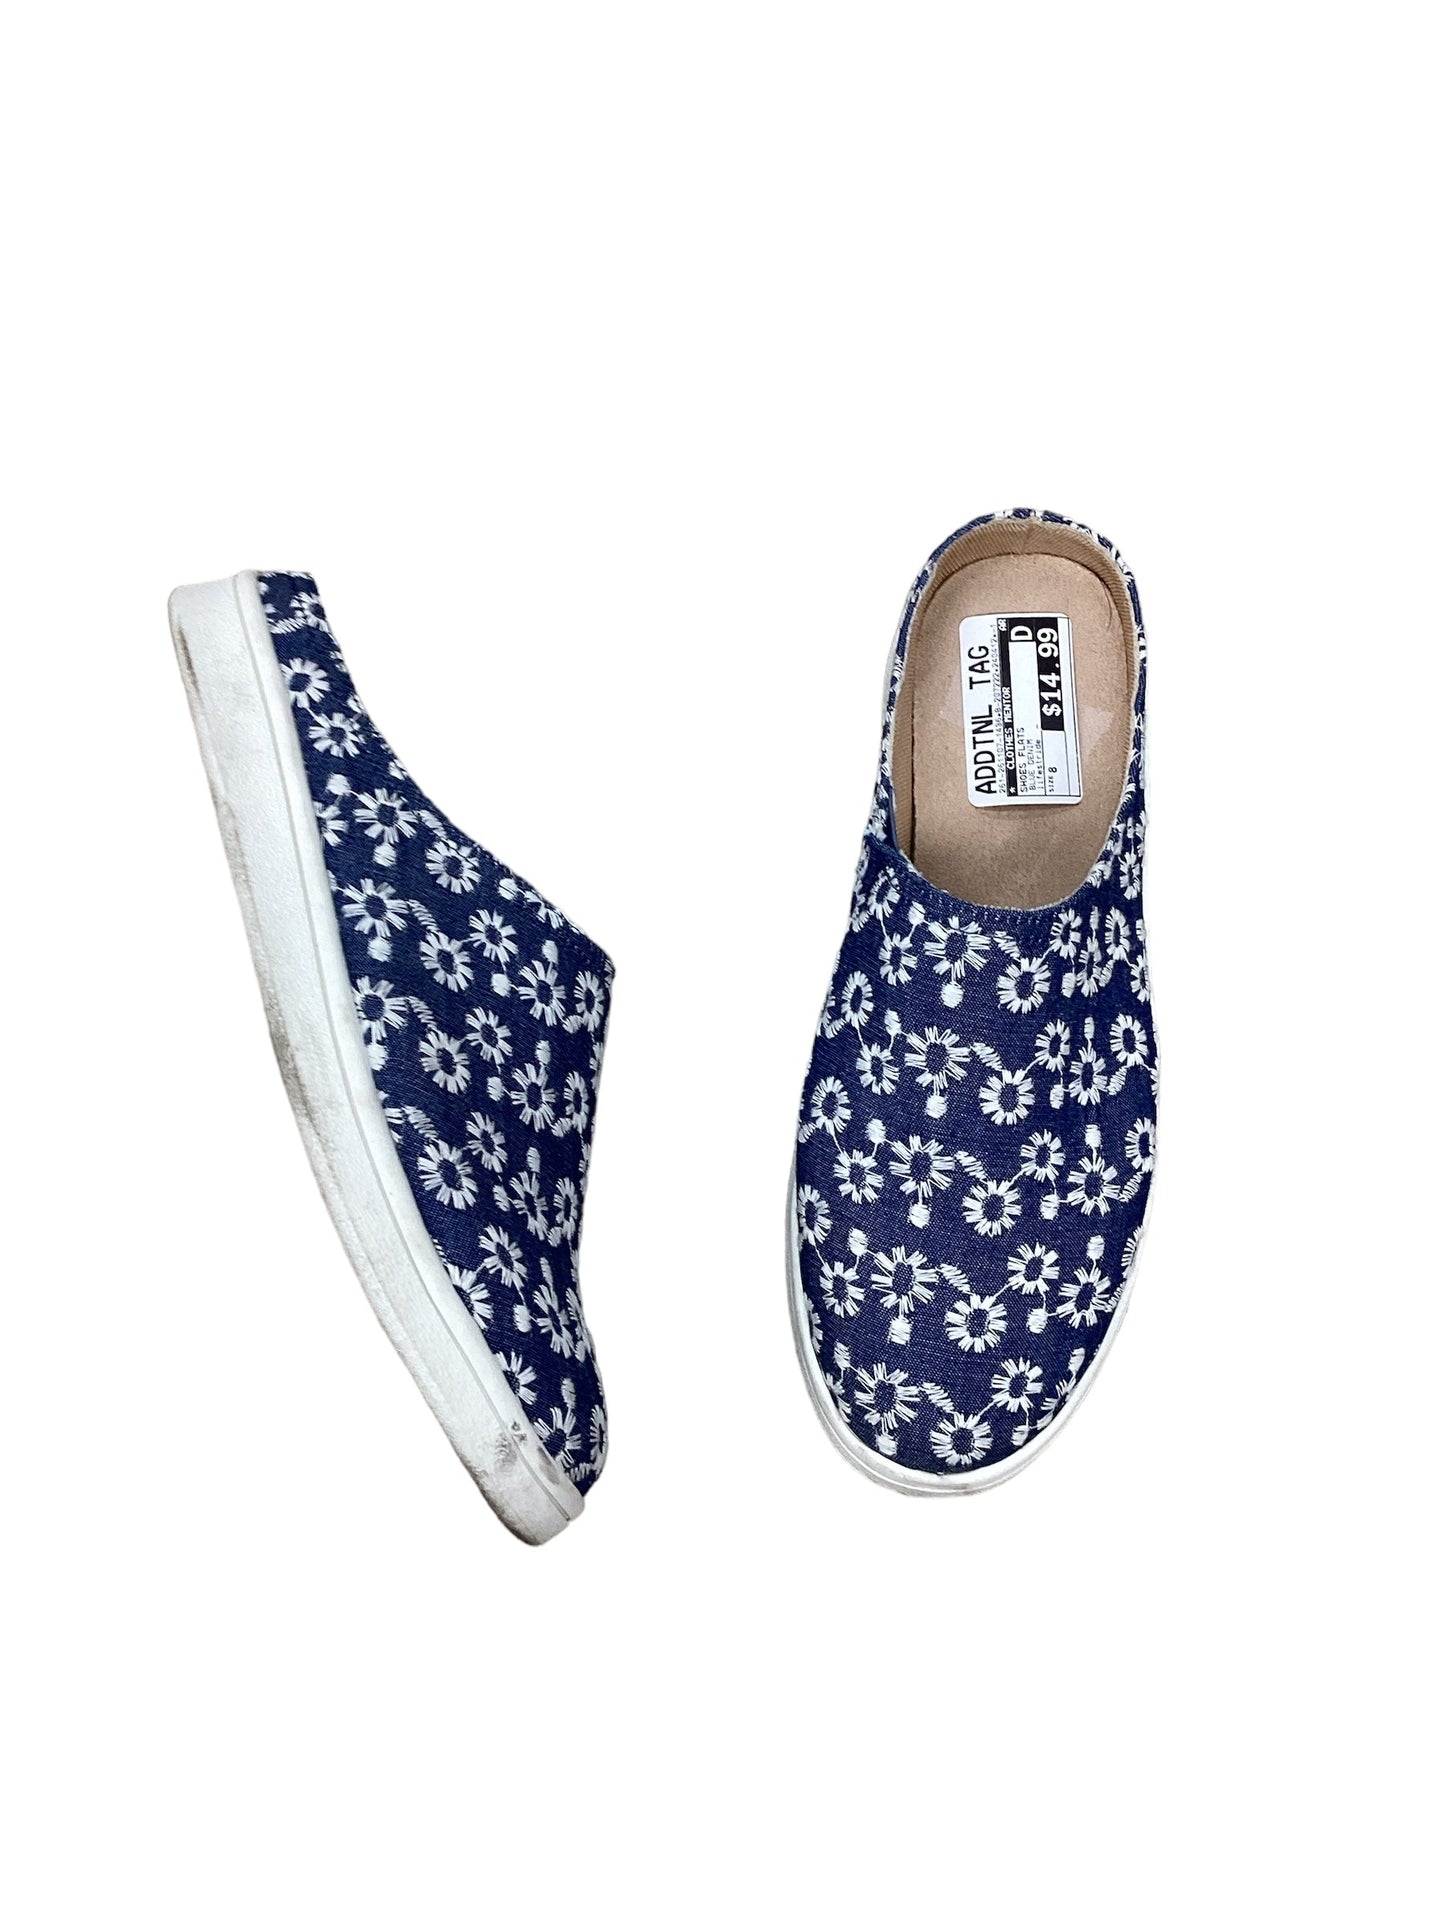 Blue Denim Shoes Flats Clothes Mentor, Size 8